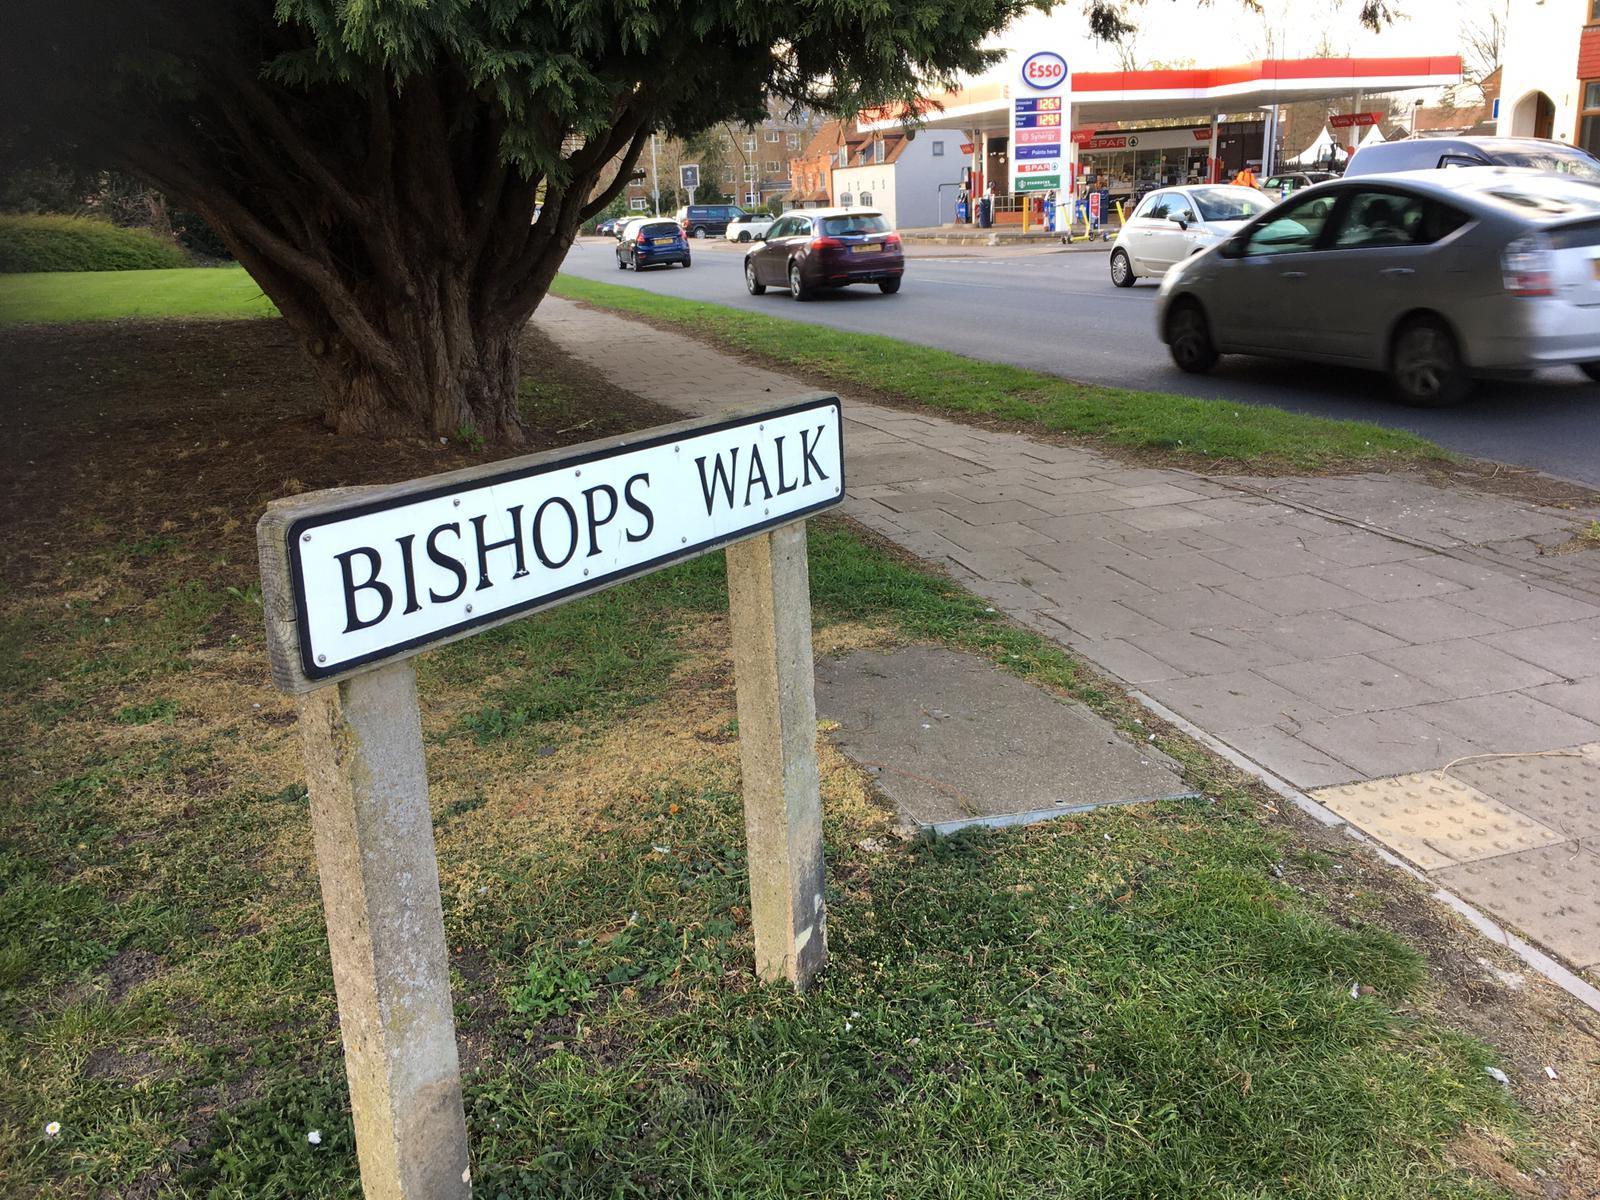 Bishops Walk in Aylesbury 